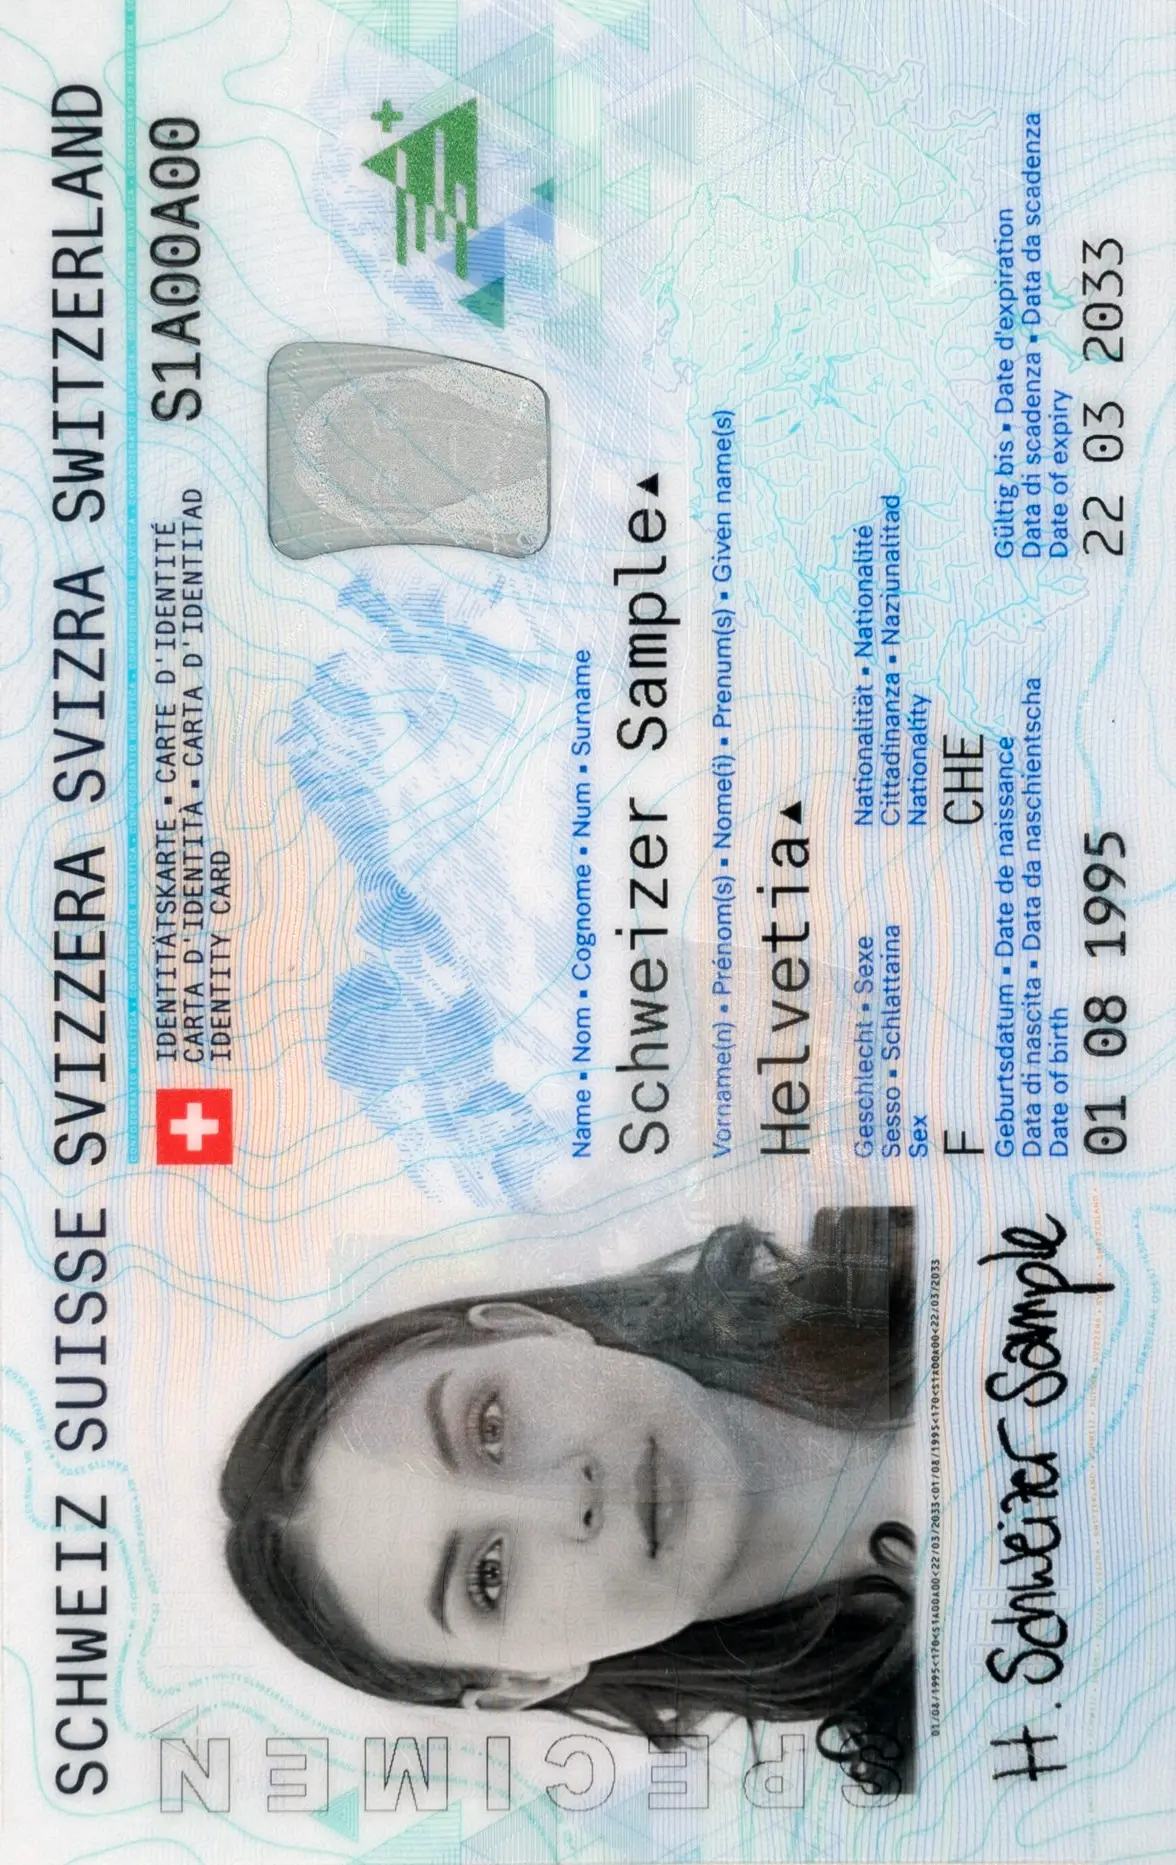 Schweizer Identitätskarte